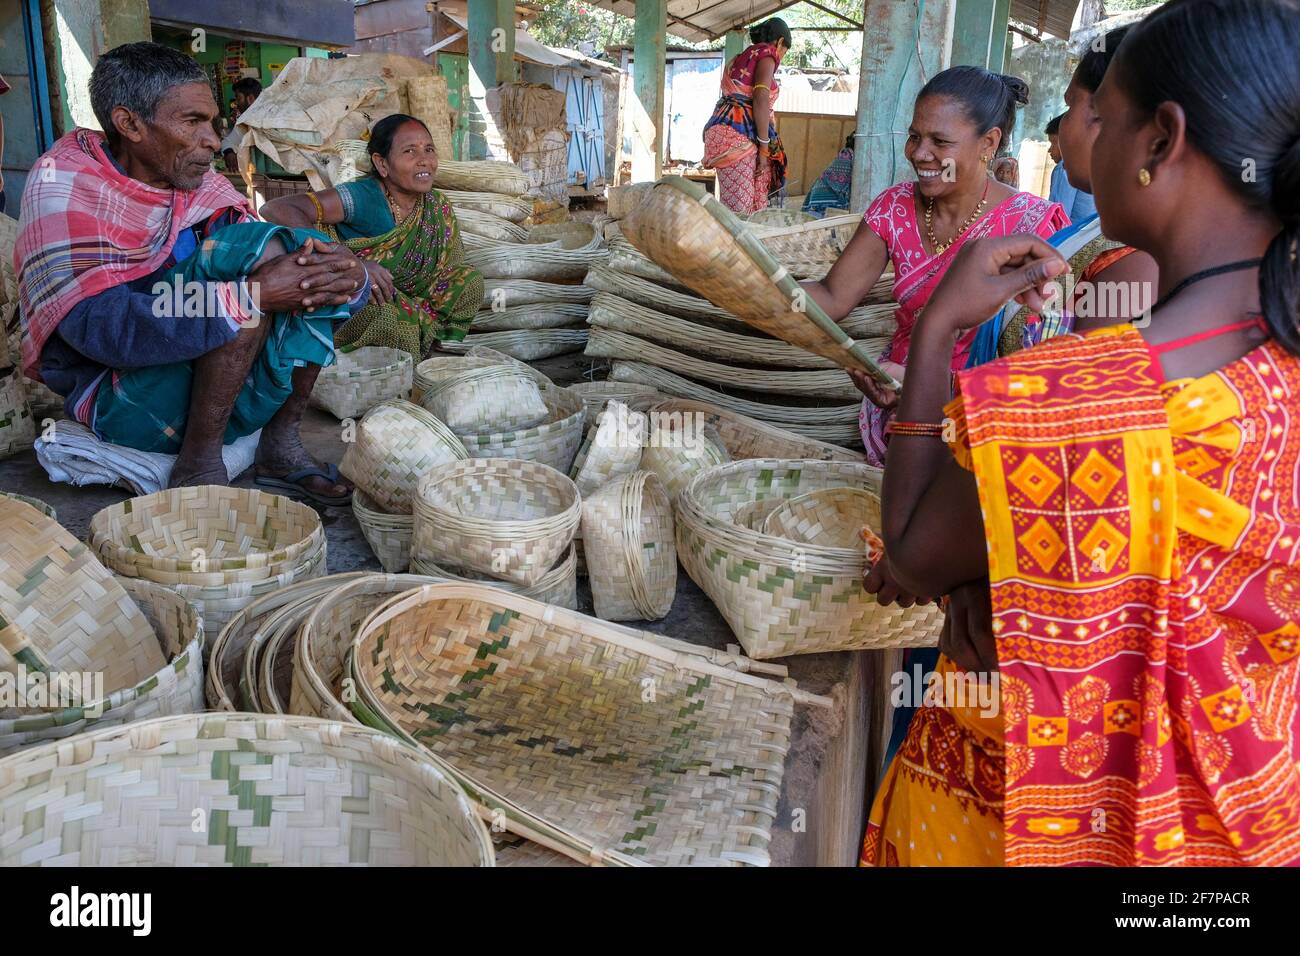 Koraput, India - February 2021: Adivasi women from the Kondh tribe buying cane baskets in the Koraput market on February 21, 2021 in Odisha, India. Stock Photo